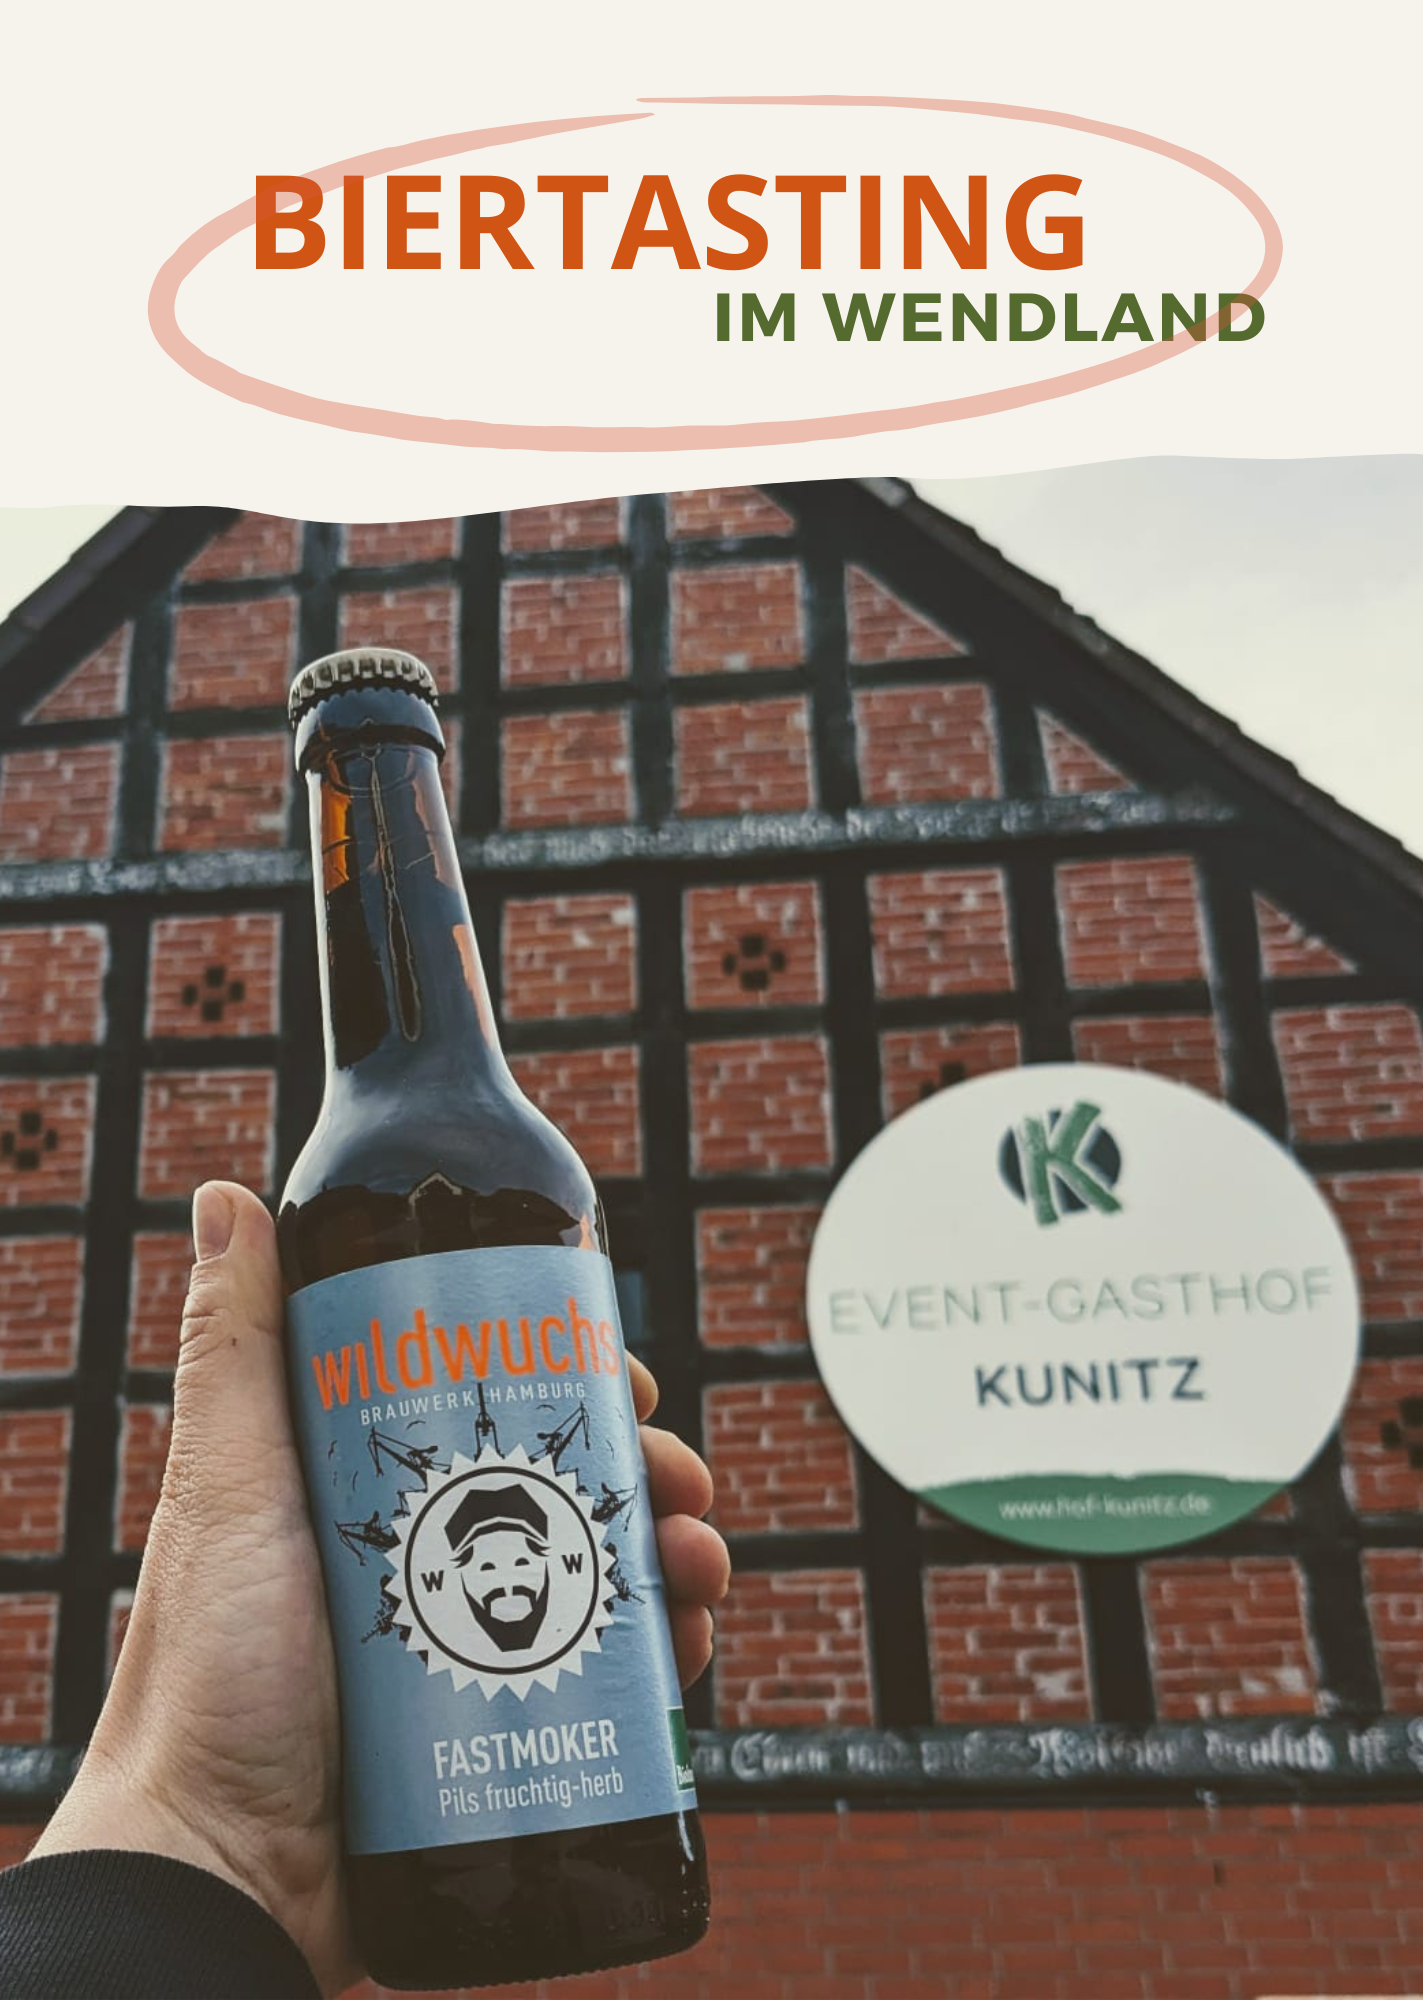 Biertasting im Wendland: Wildwuchs x Event-Gasthof Kunitz 